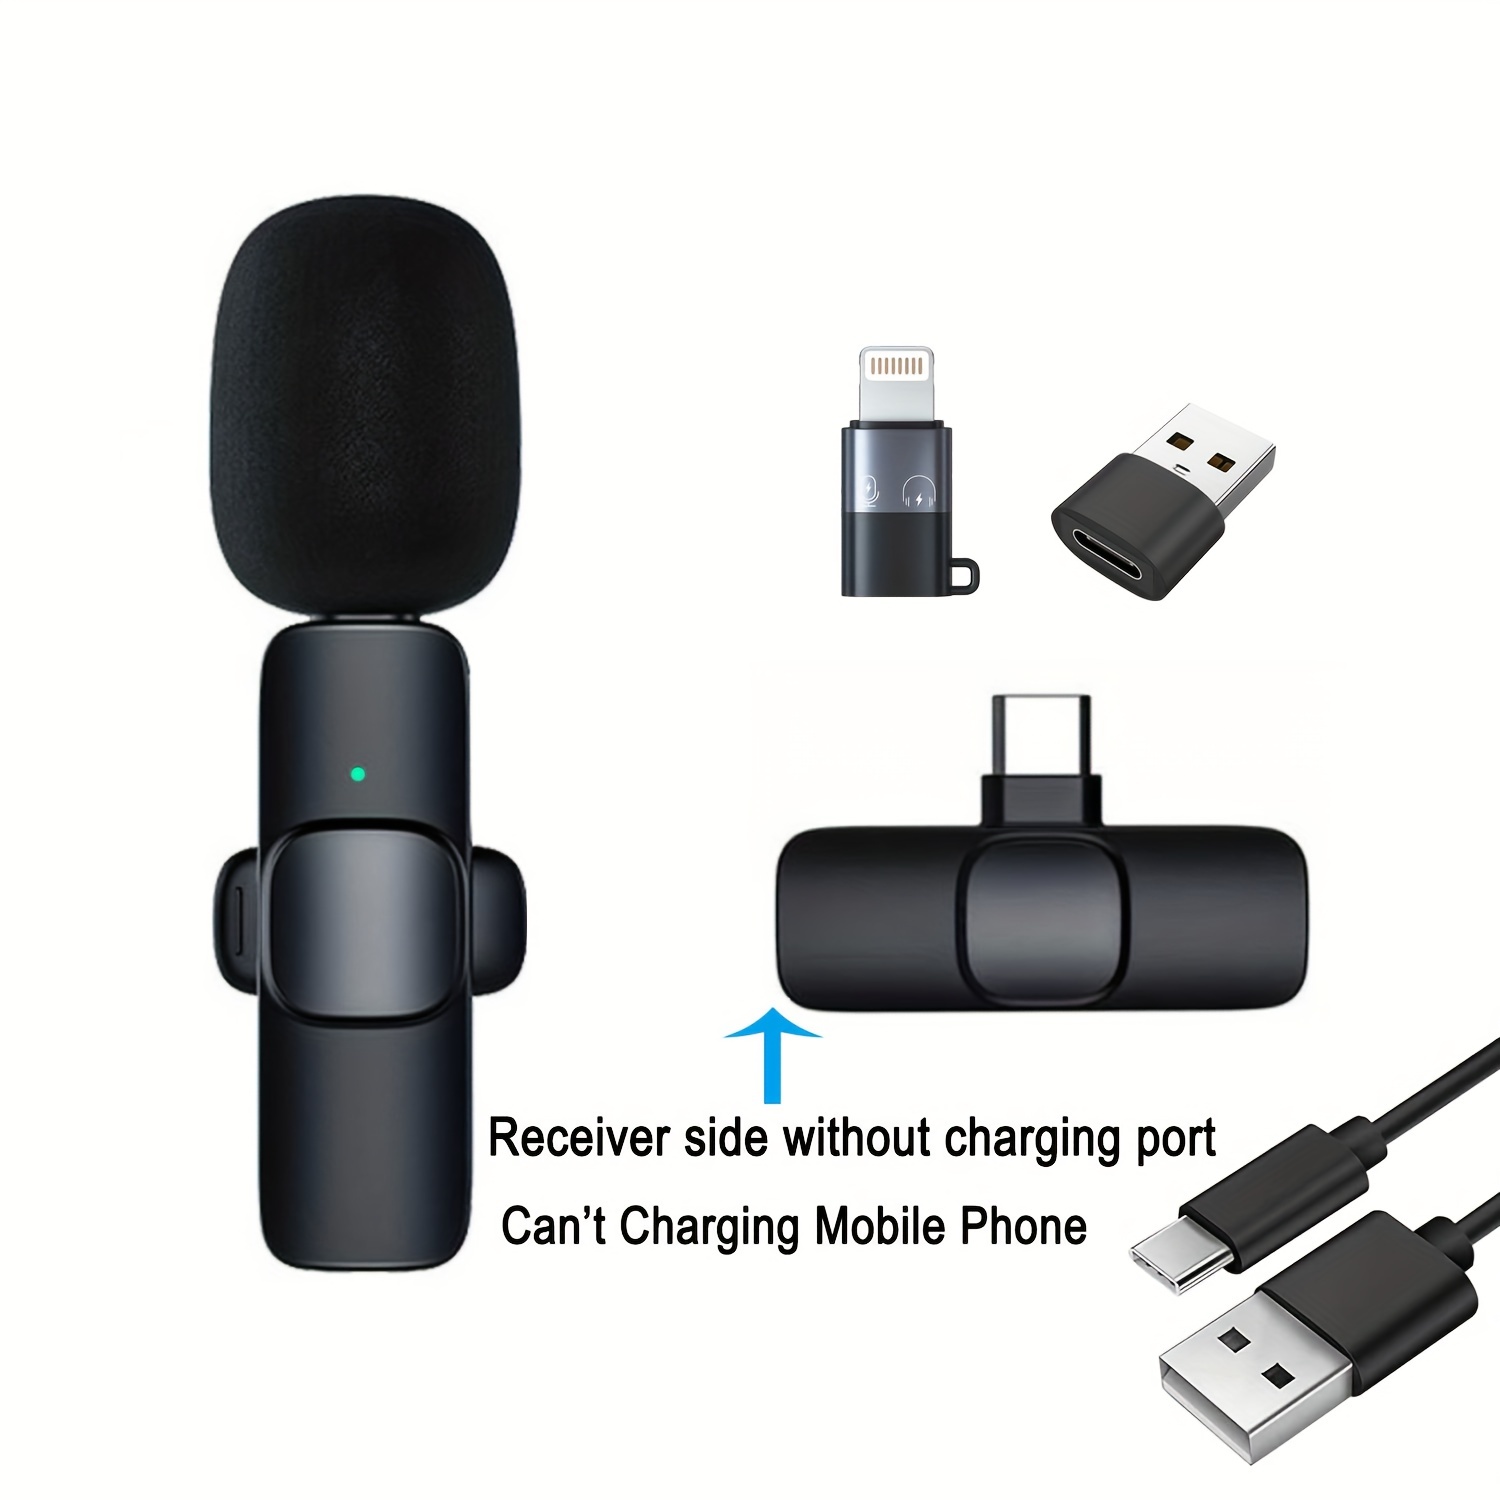 WMX-1-UL | Wireless USB and USB-C Lavalier Microphone | Movo